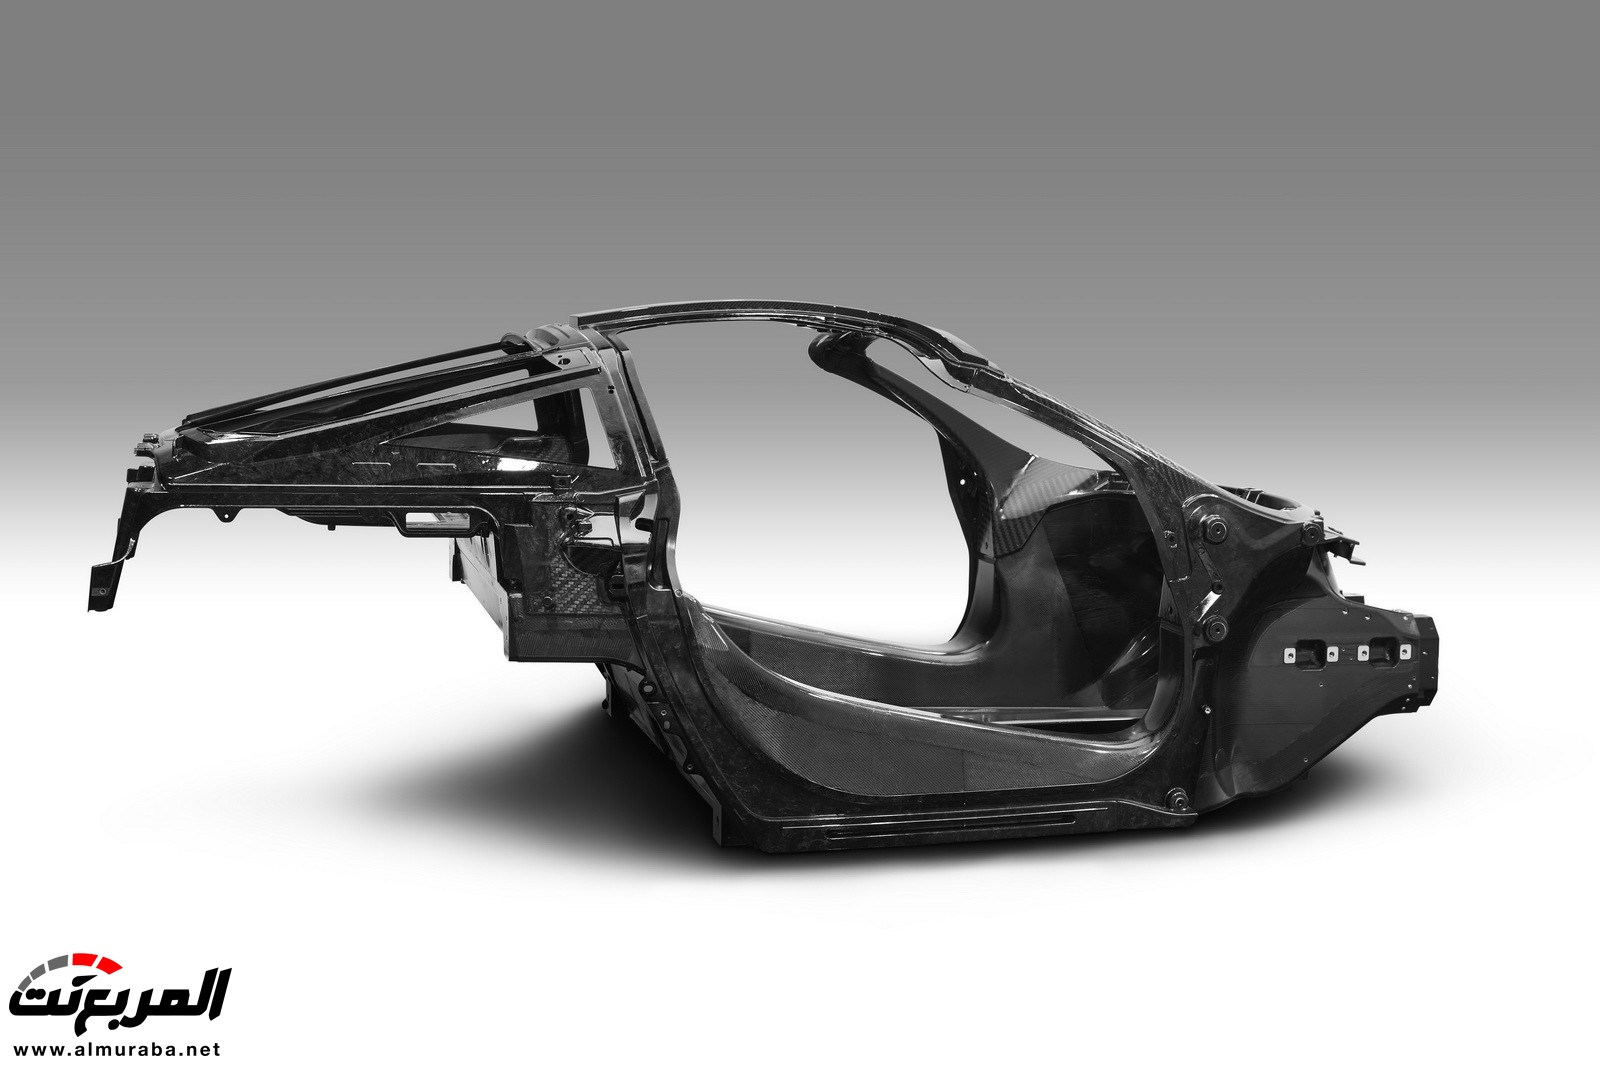 "مكلارين" تقرر نقل إنتاج الشاصيه لسياراتها من النمسا إلى المملكة المتحدة McLaren 2